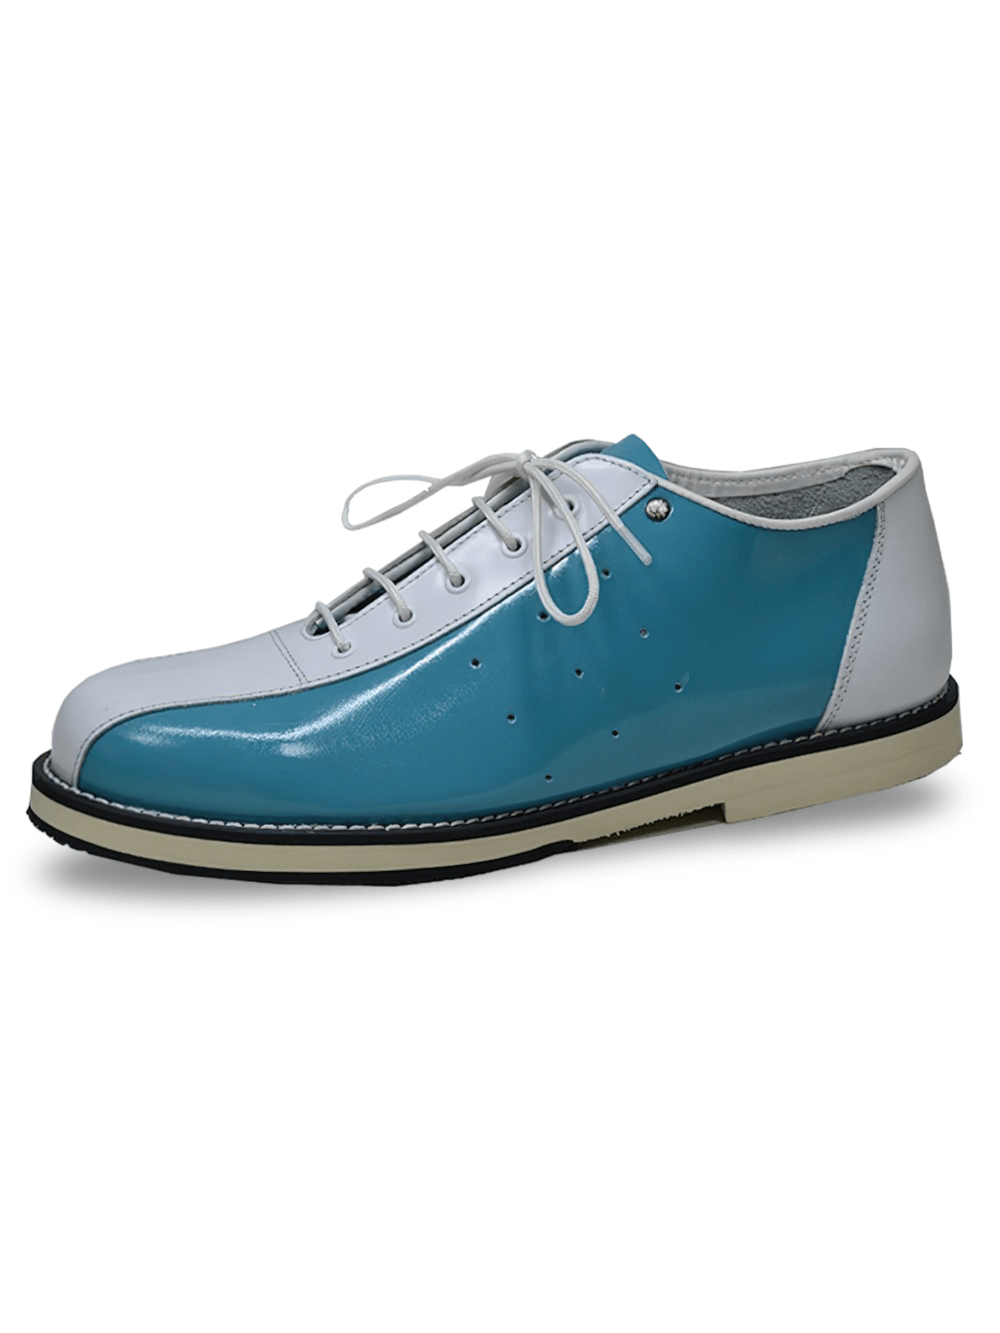 Chaussures de bowling vernies bleues et blanches avec semelle en néolite